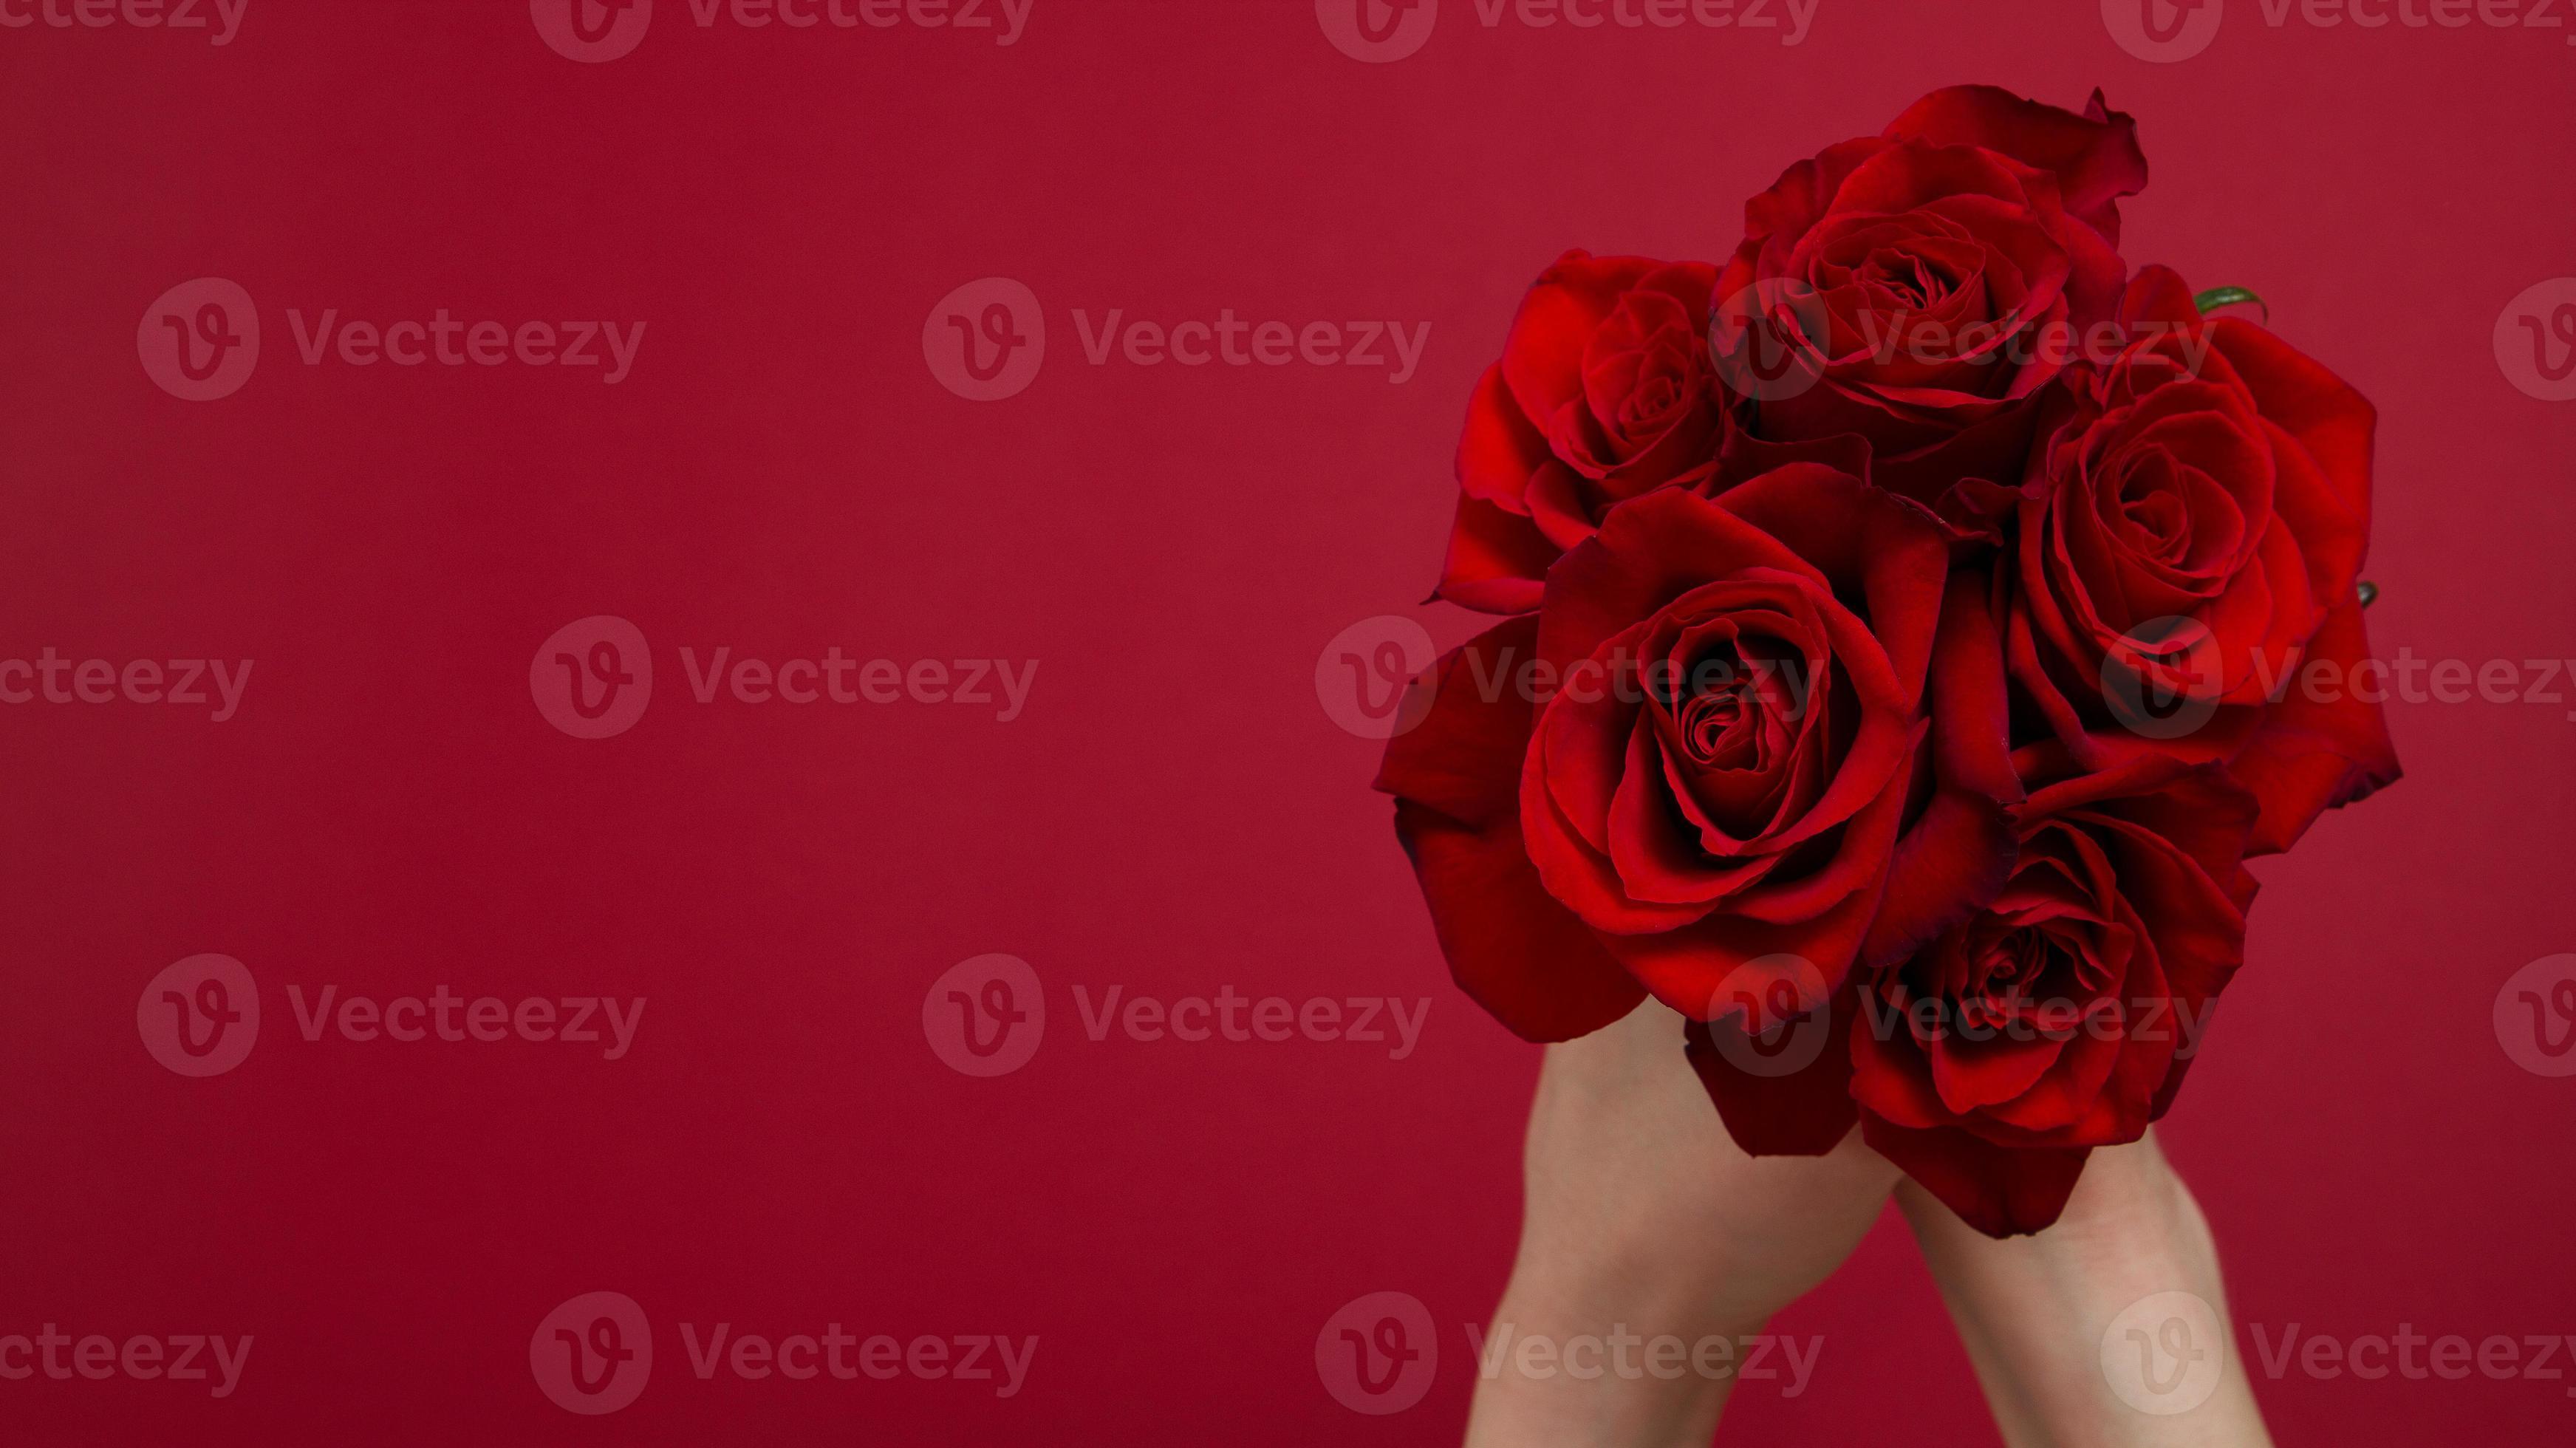 Lada vruchten mengsel stuur bloemen online concept. bloemen bezorgen voor valentijn, moederdag.  boeket van rode rozen geïsoleerd op rode achtergrond. ansichtkaart ontwerp  prachtige natuur roos. bovenaanzicht. ruimte kopiëren. selectieve focus  5338947 stockfoto bij Vecteezy